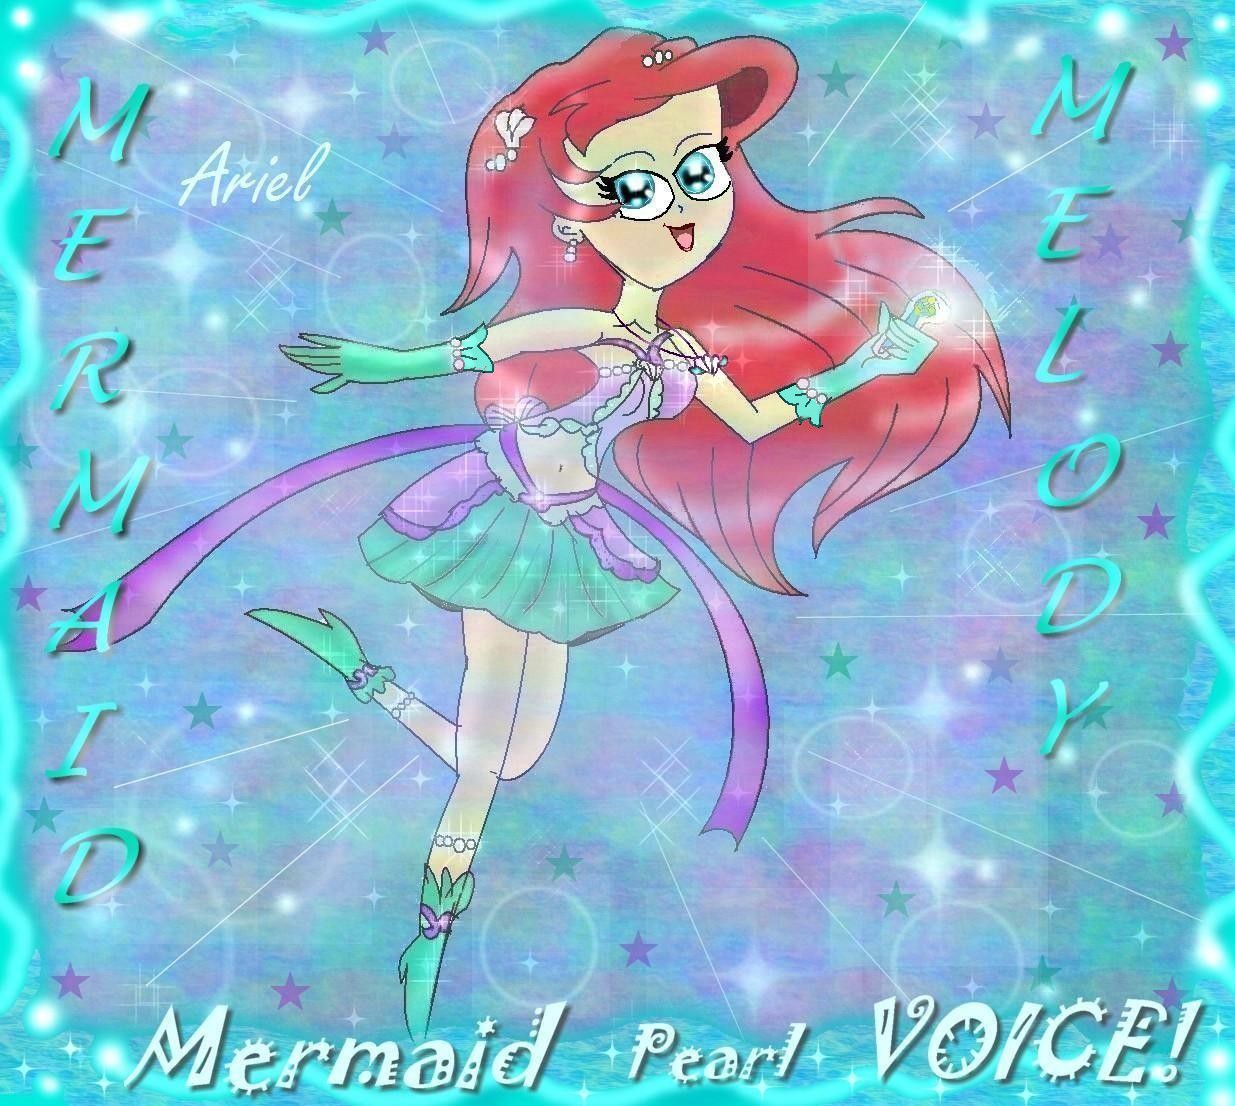 Ariel mermaid melody style by artangel